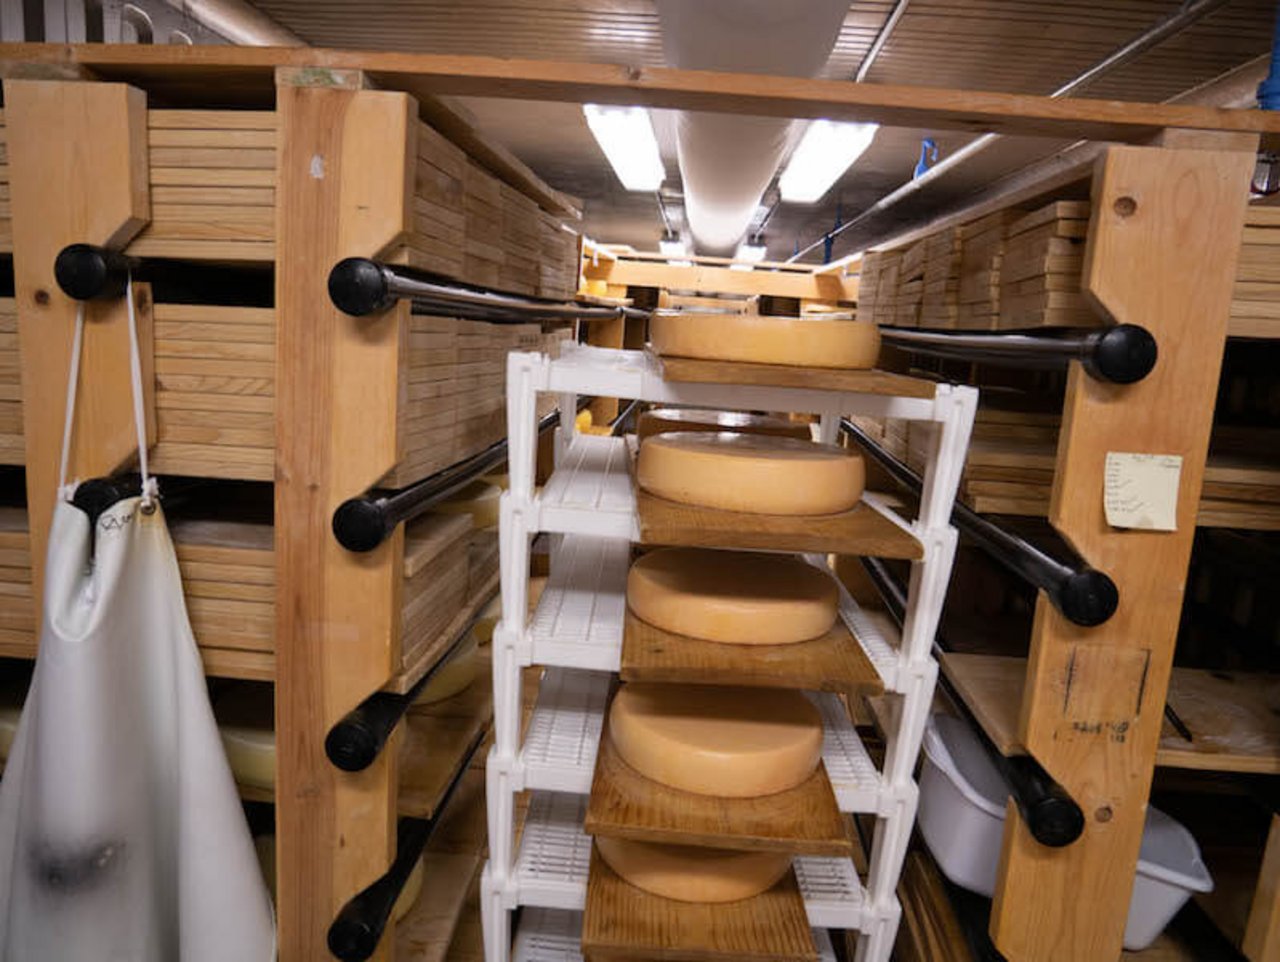 Nicht möglich ist die Produktion von Rohmilch-Käse, die Vorschriften in den USA sind zu streng. (Bild lid)